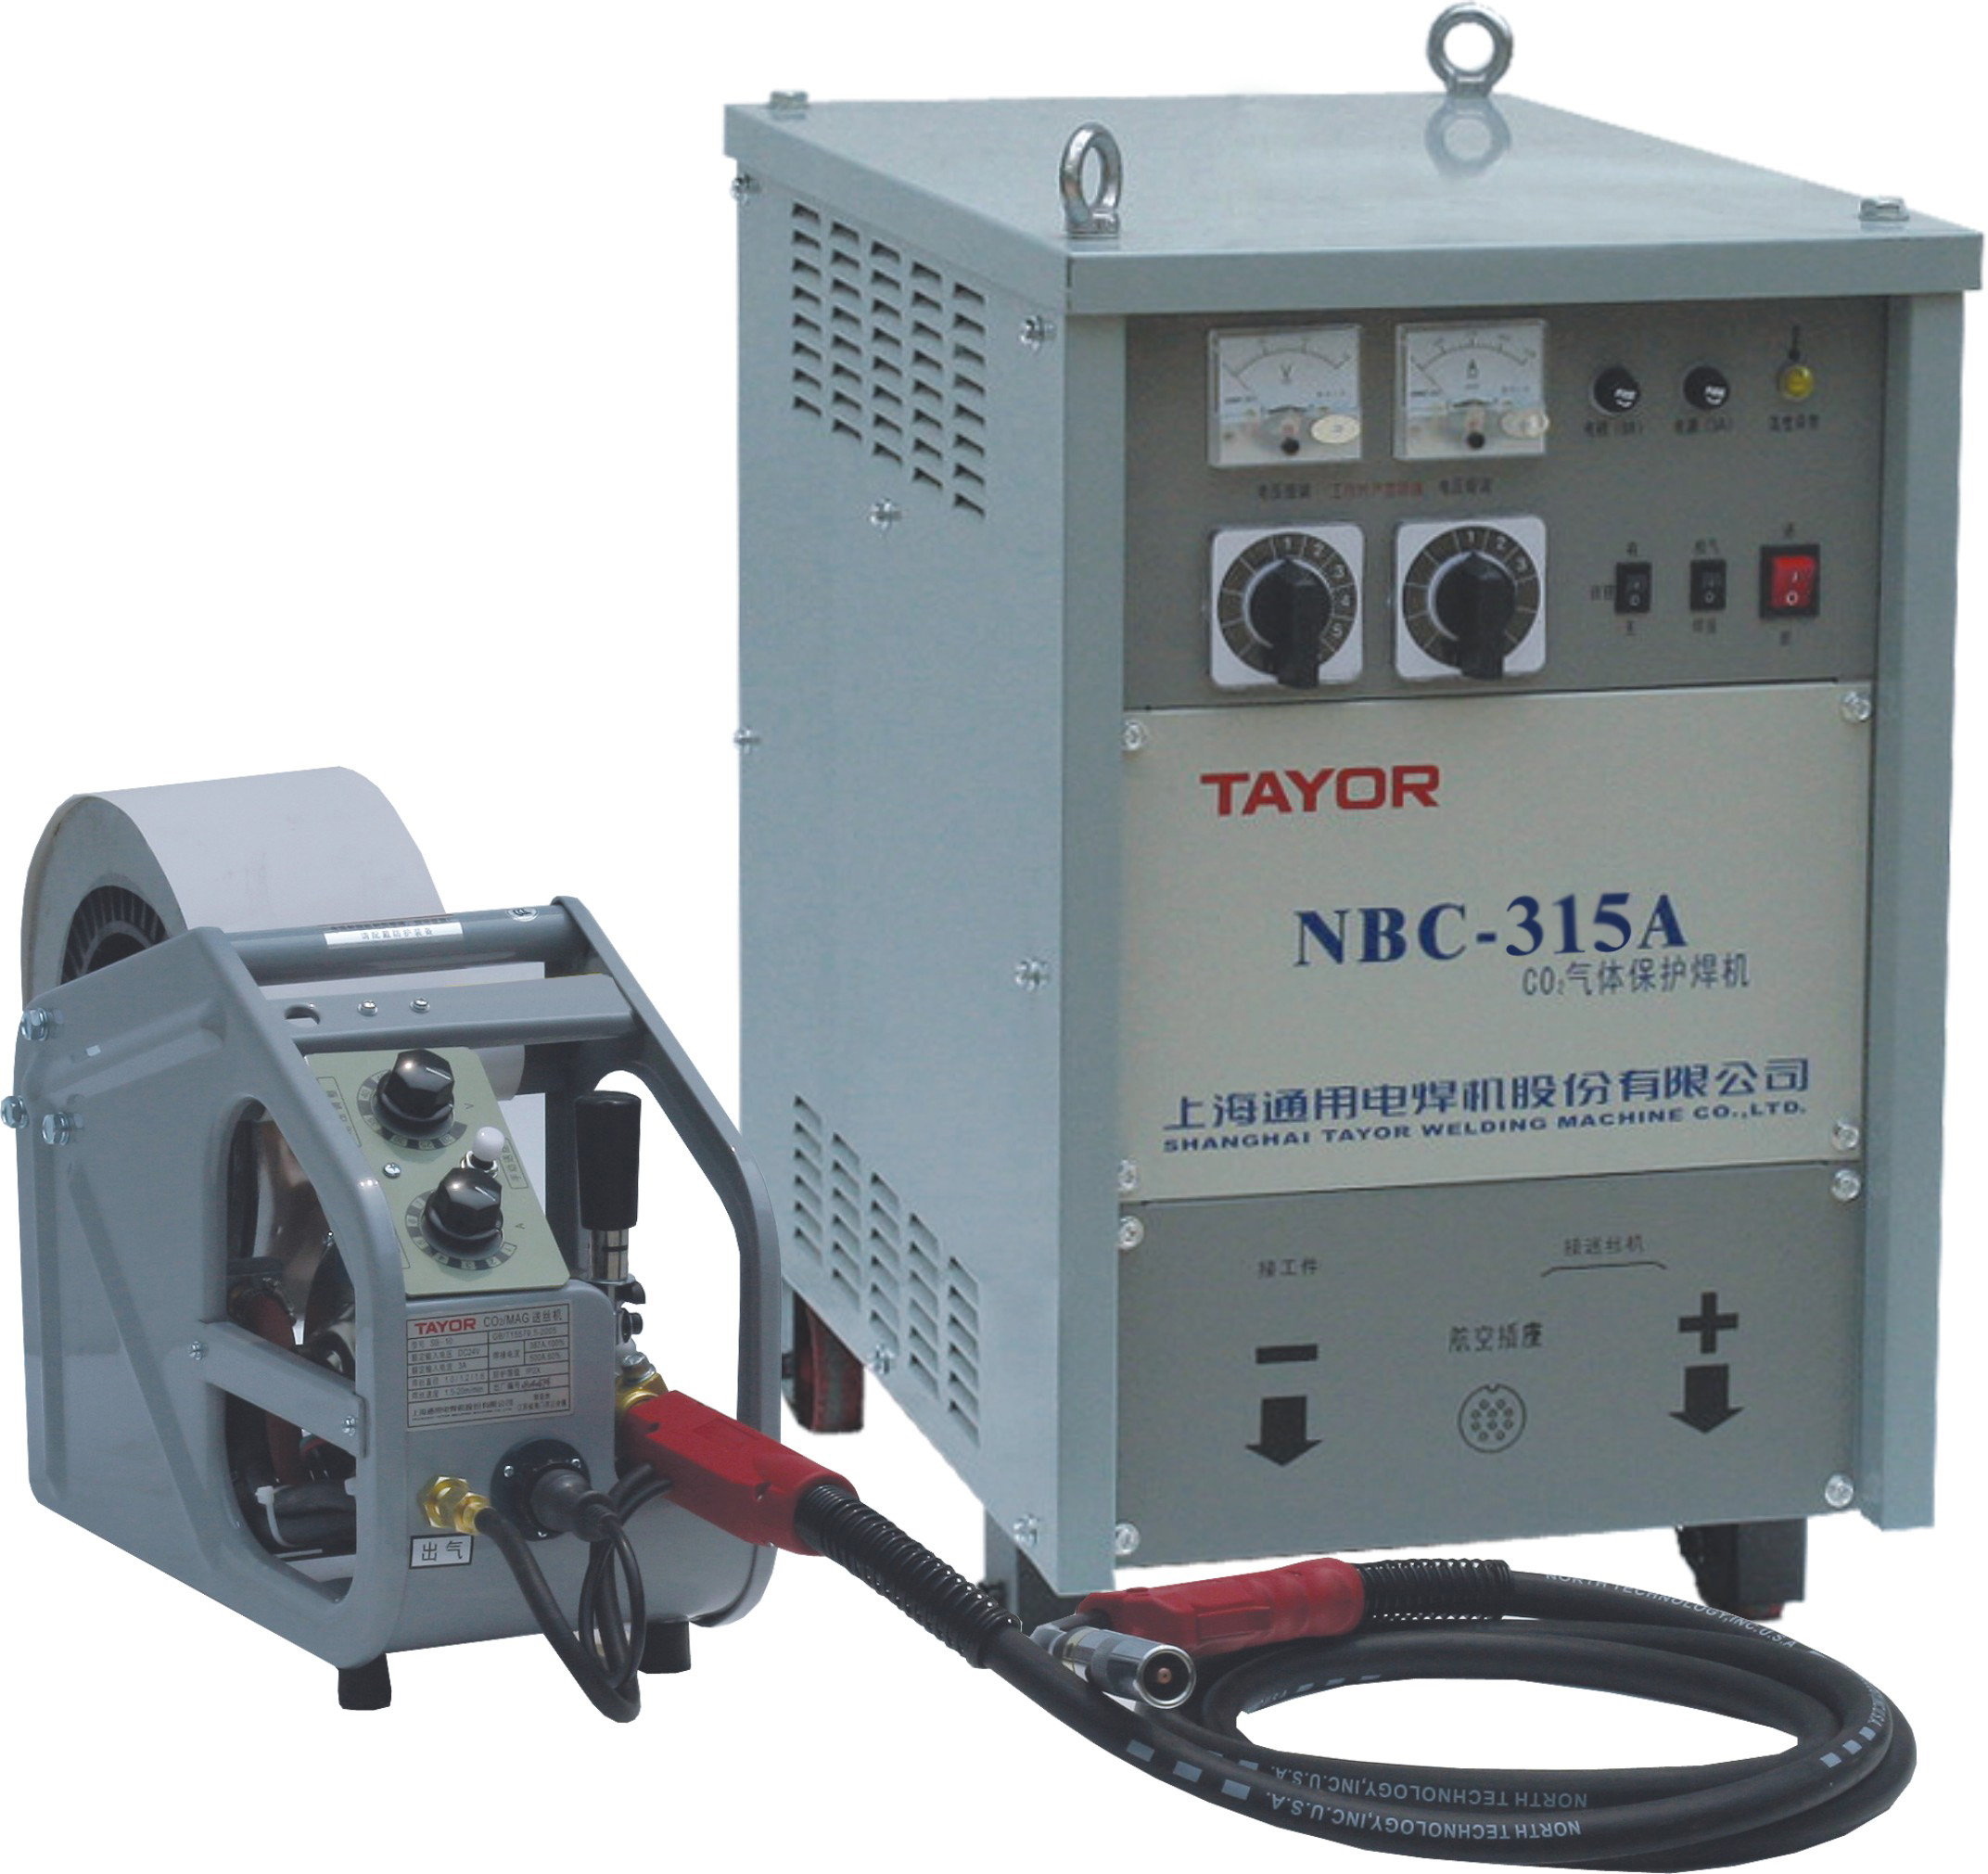 供应上海通用气保焊机NB-350KR上海通用销售价格